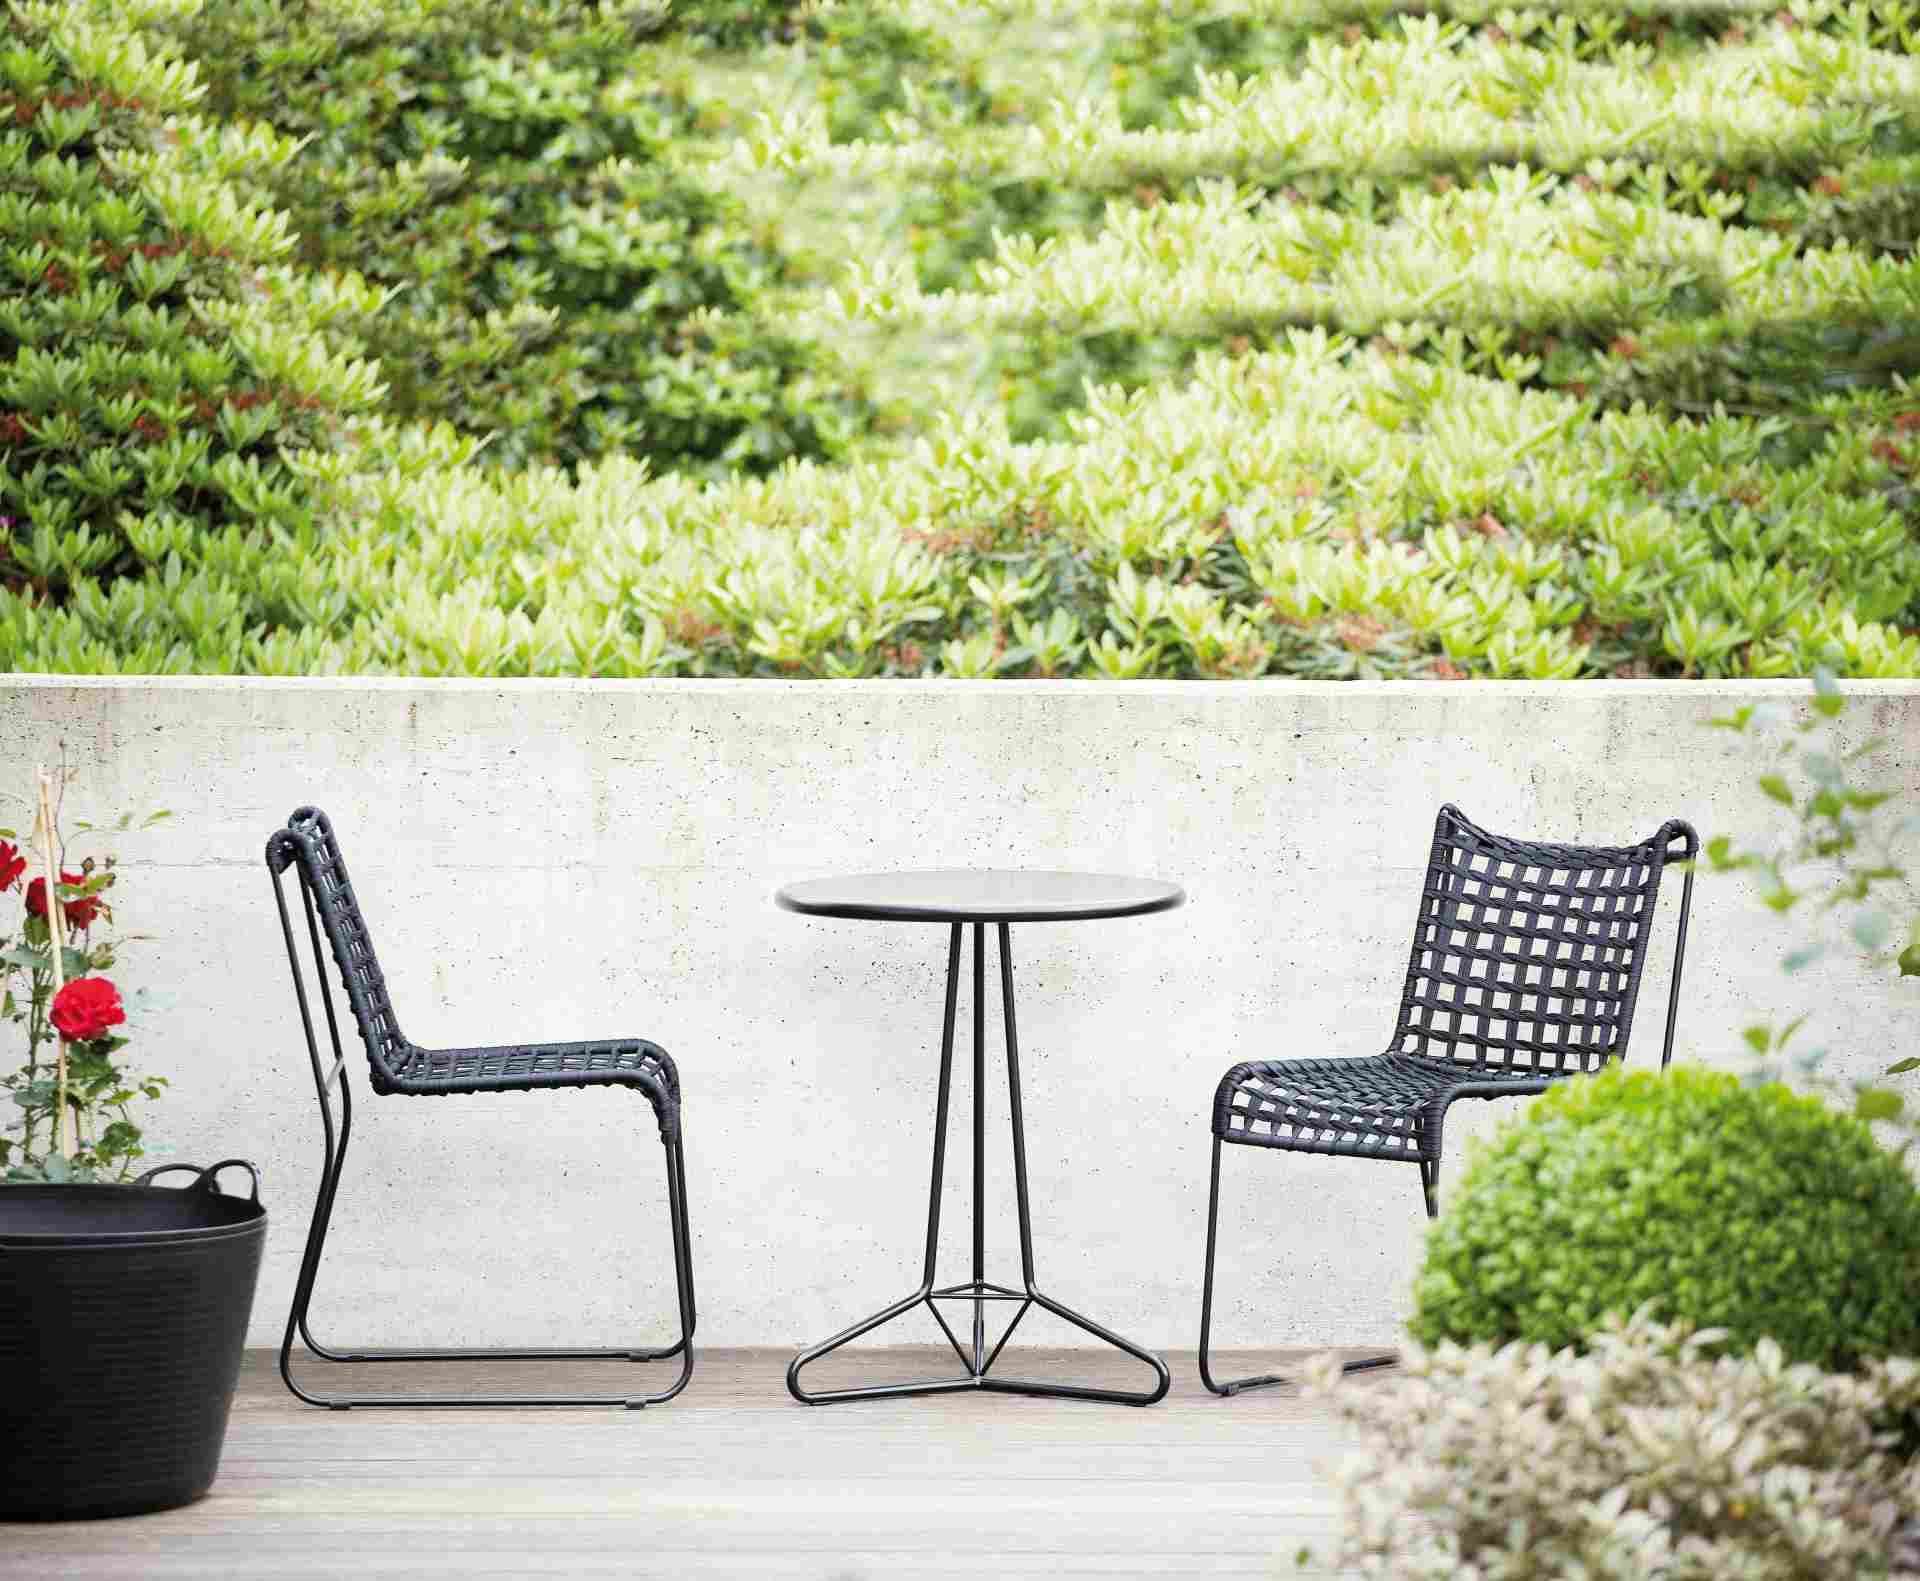 Moderner Gartenstuhl In / Out welcher aus Metall gefertigt wurde. Designet von der Marke Jan Kurtz in einem schwarzen Farbton. Outdoor geeignet.